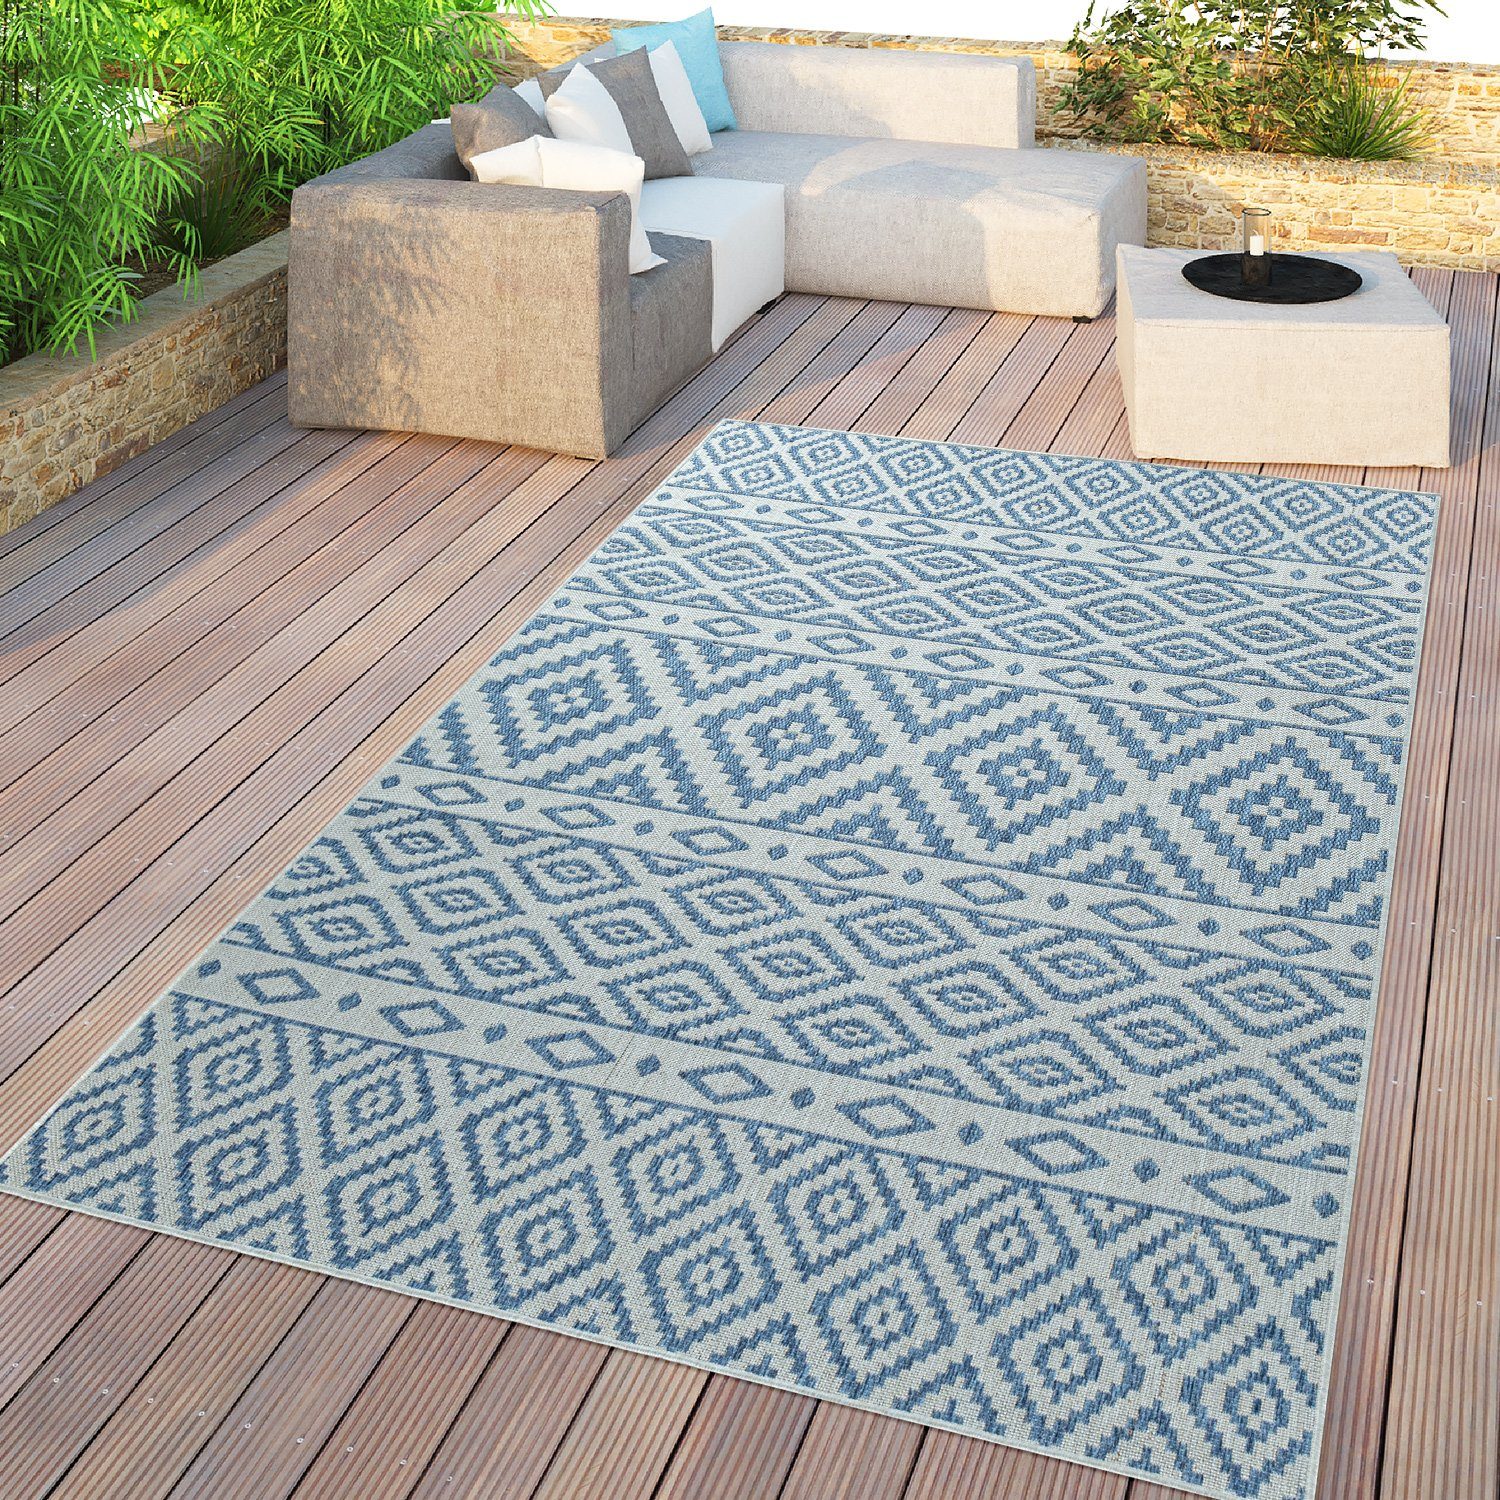 Outdoorteppich In- & Outdoor-Teppich Für Balkon, TT Home, rechteckig, Höhe: 8 mm